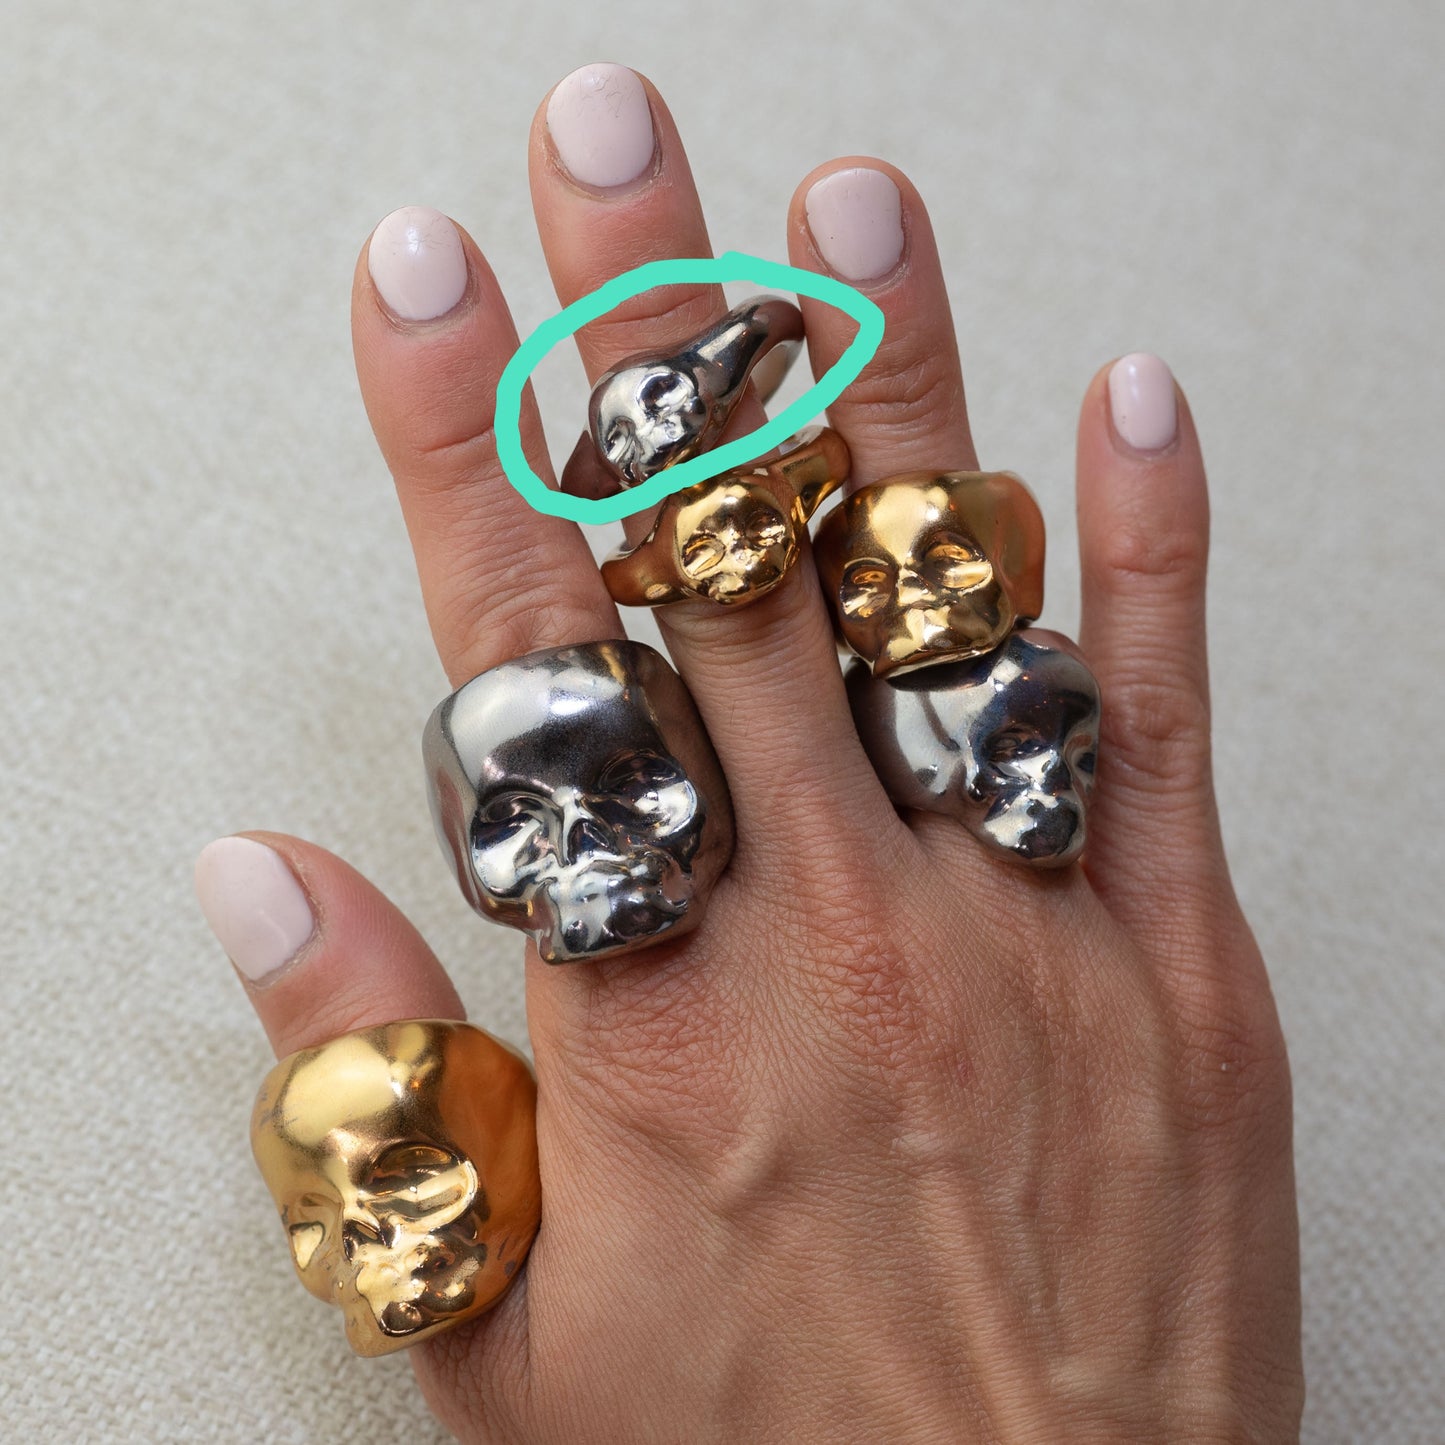 Gilded Porcelain Skull Band Ring - White Gold